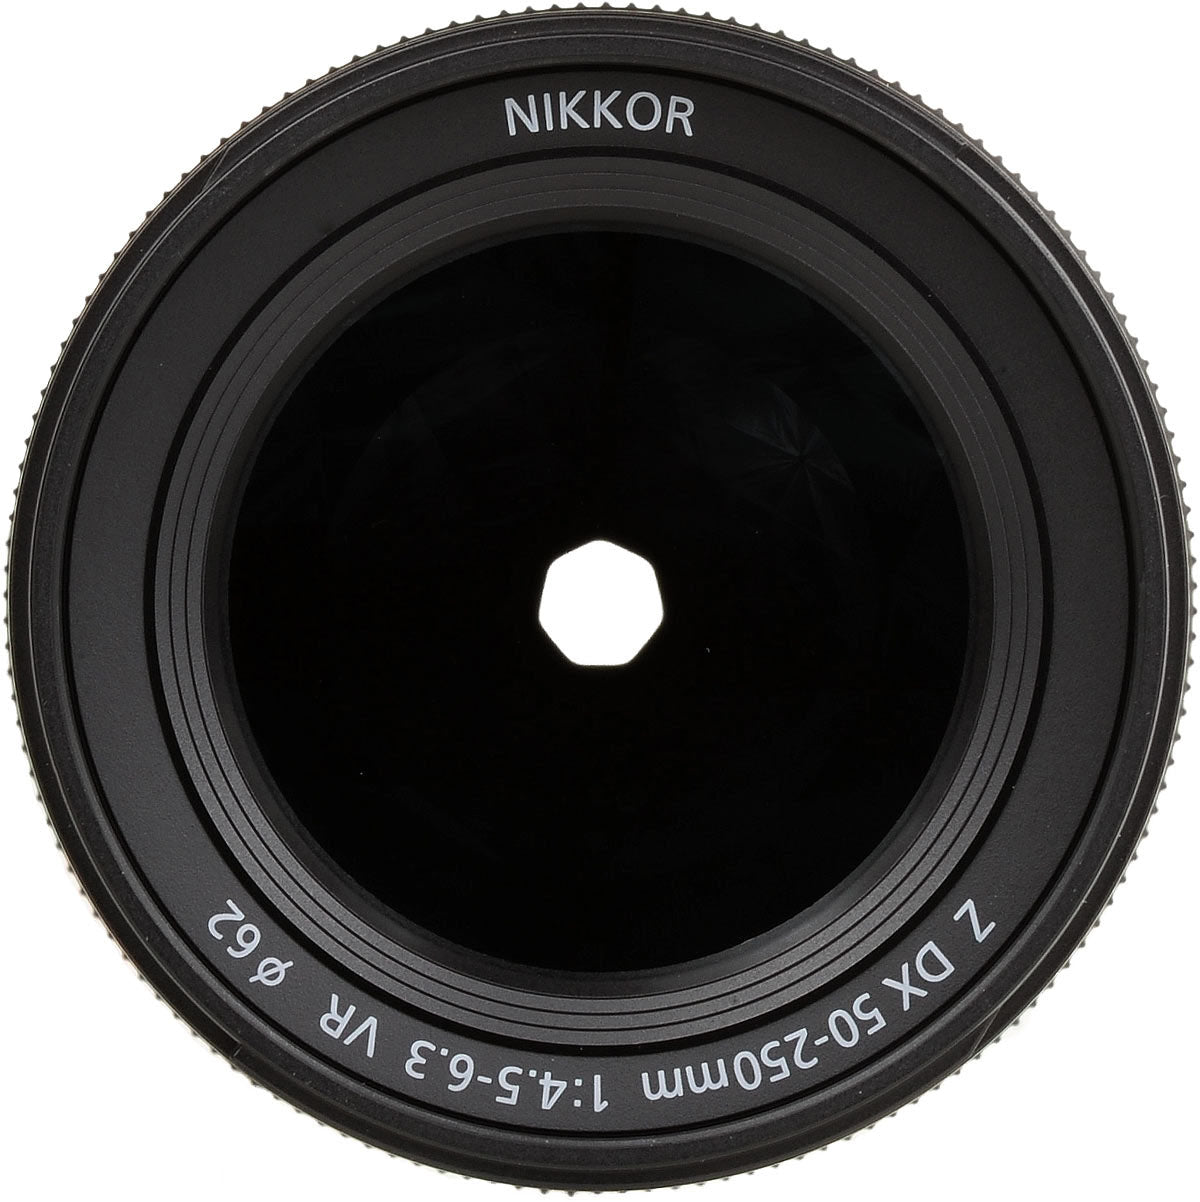 Nikon NIKKOR Z DX 50-250mm f/4.5-6.3 VR Lens Intl Model Bundle + 64GB SD Card